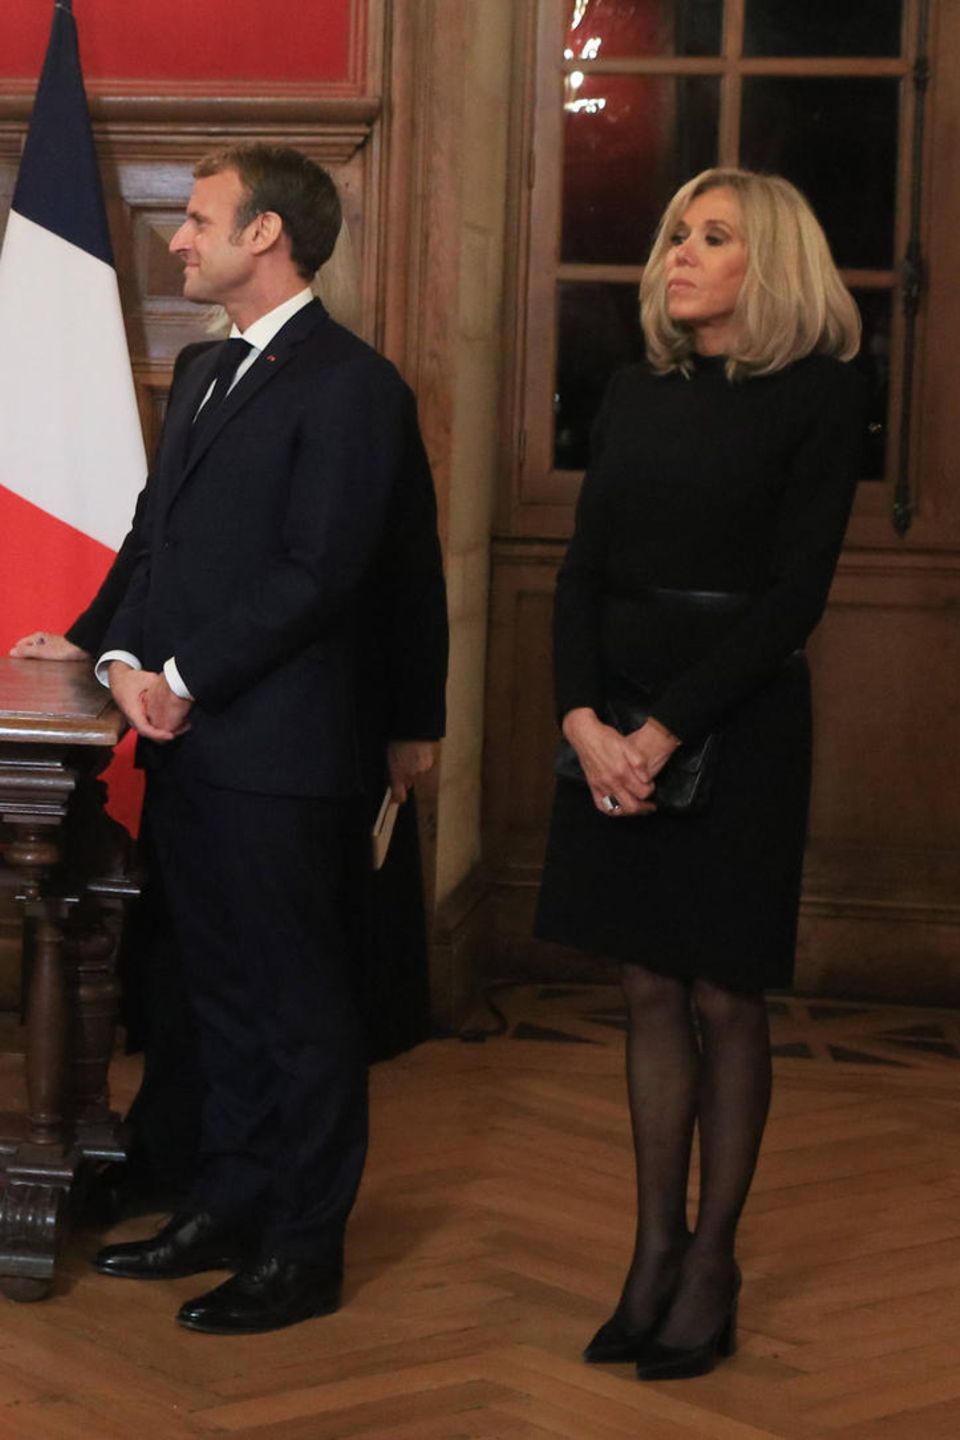 Der Style von Brigitte Macron: Abschied von Angela Merkel, Brigitte Macron im schwarzen Kleid